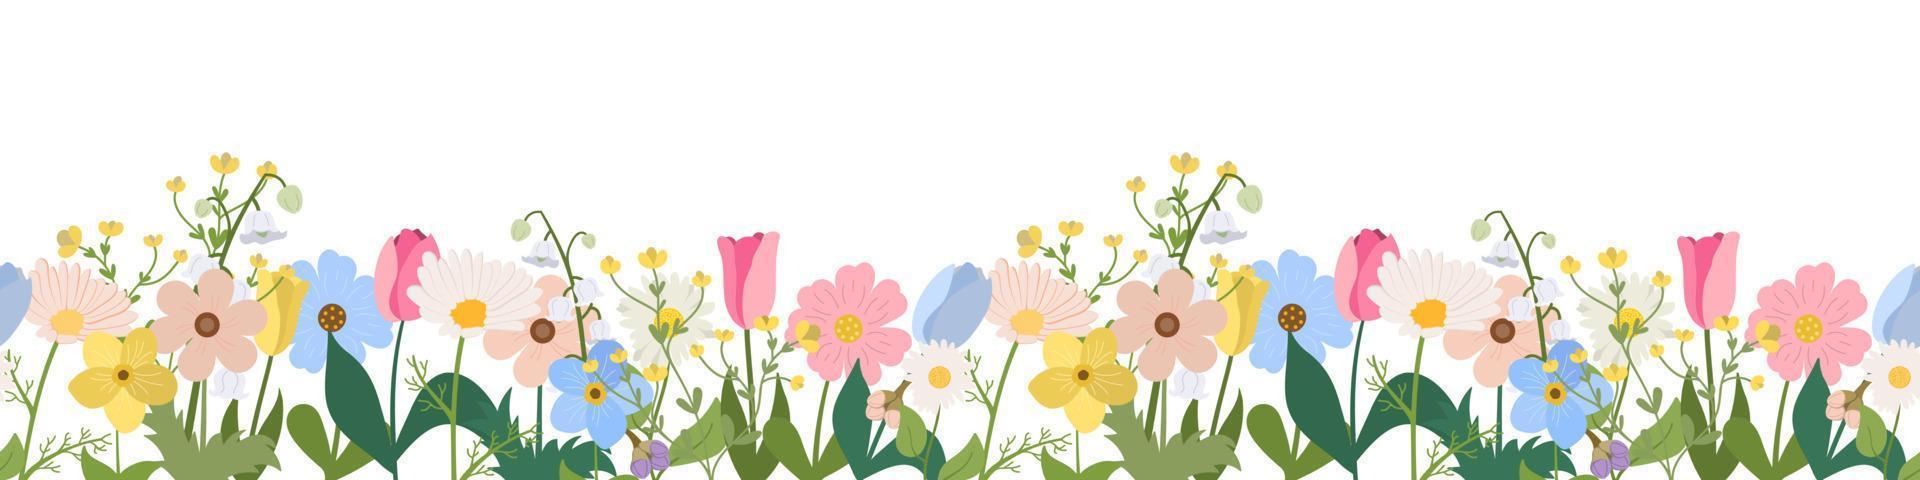 borde horizontal sin costuras de primavera o verano con flores florecientes sobre fondo blanco. flores de jardín multicolores en fila. pancarta con motivos florales. vector